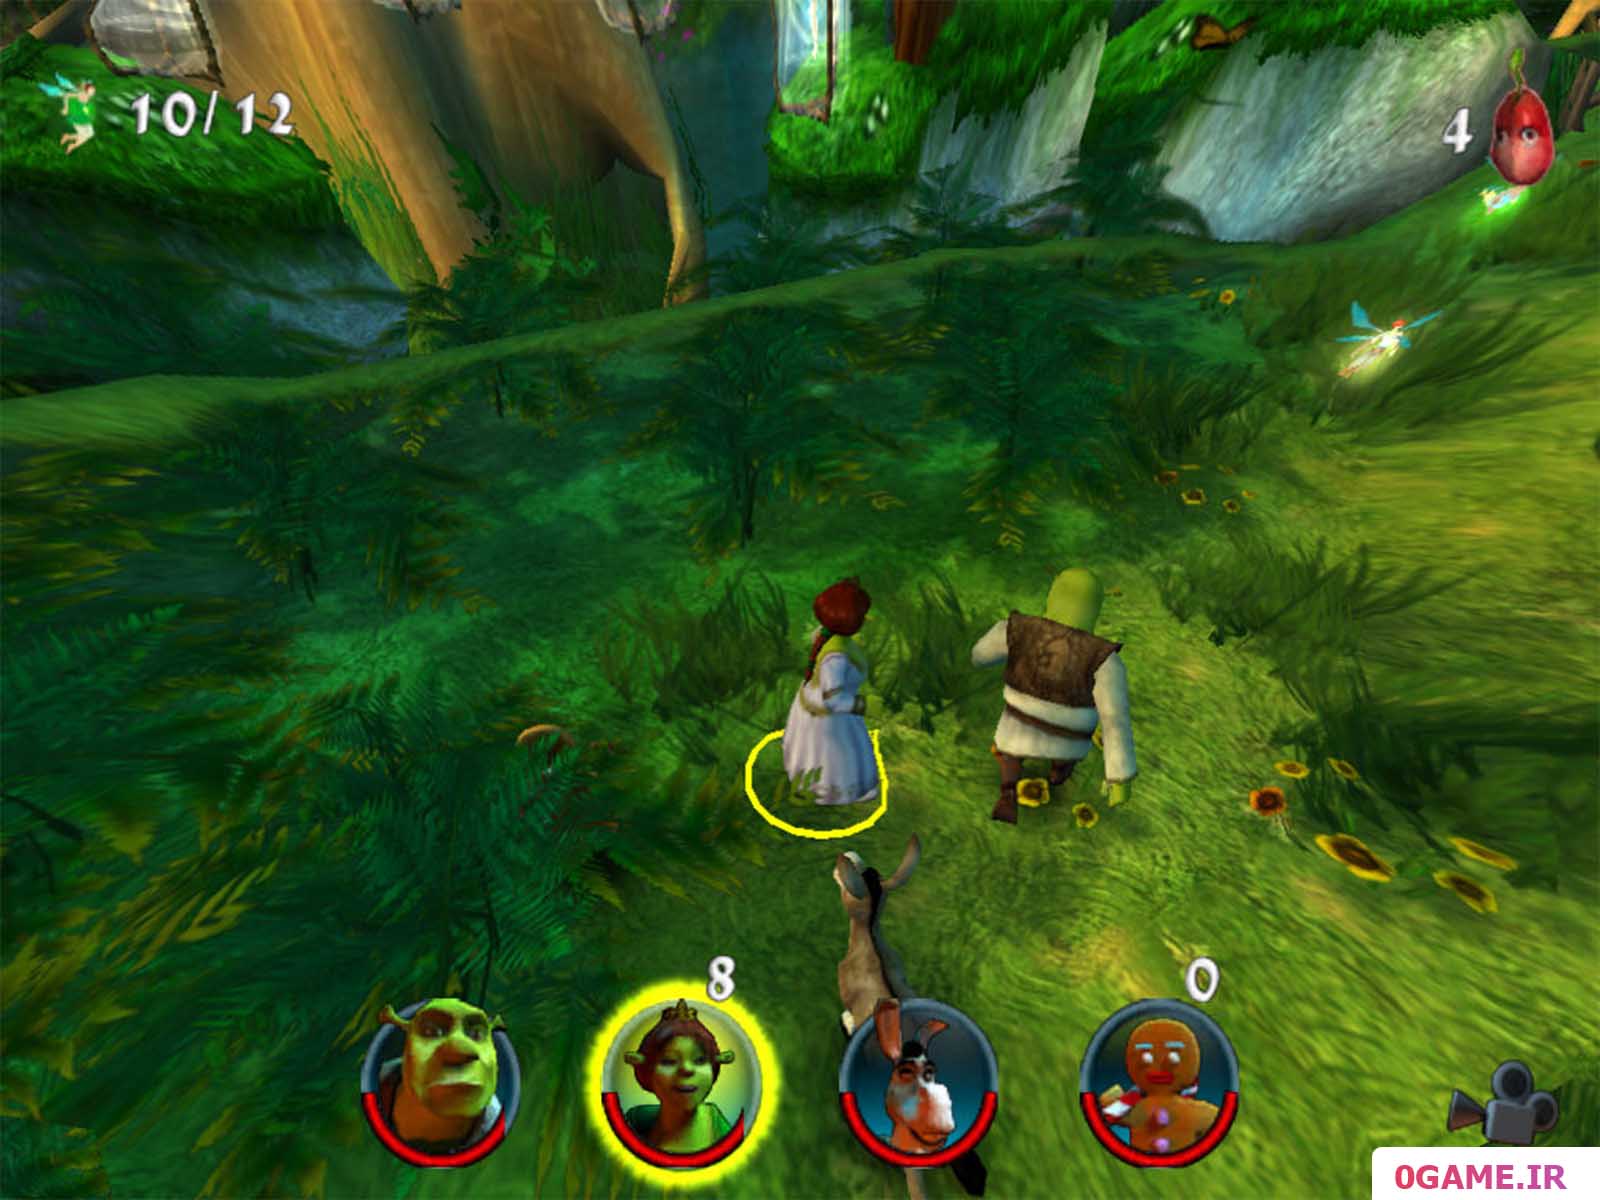  دانلود بازی شرک 2 اقدام تیمی (Shrek 2: Team Action) نسخه کامل